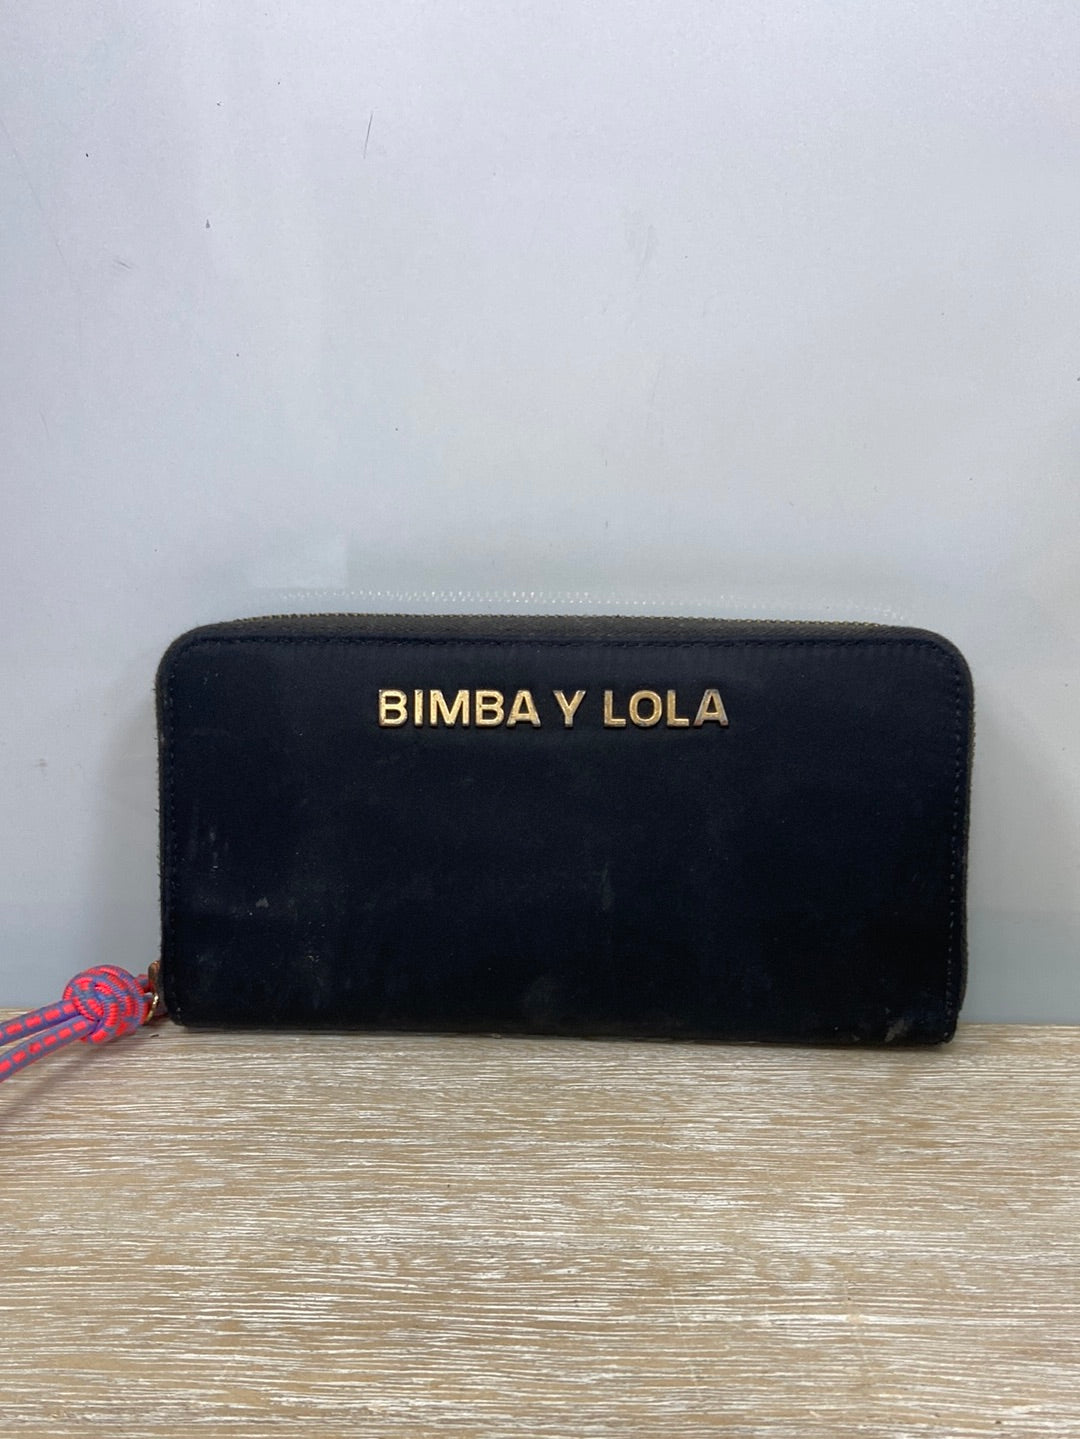 BIMBA Y LOLA.Cartera negra (Tara) – Hibuy market